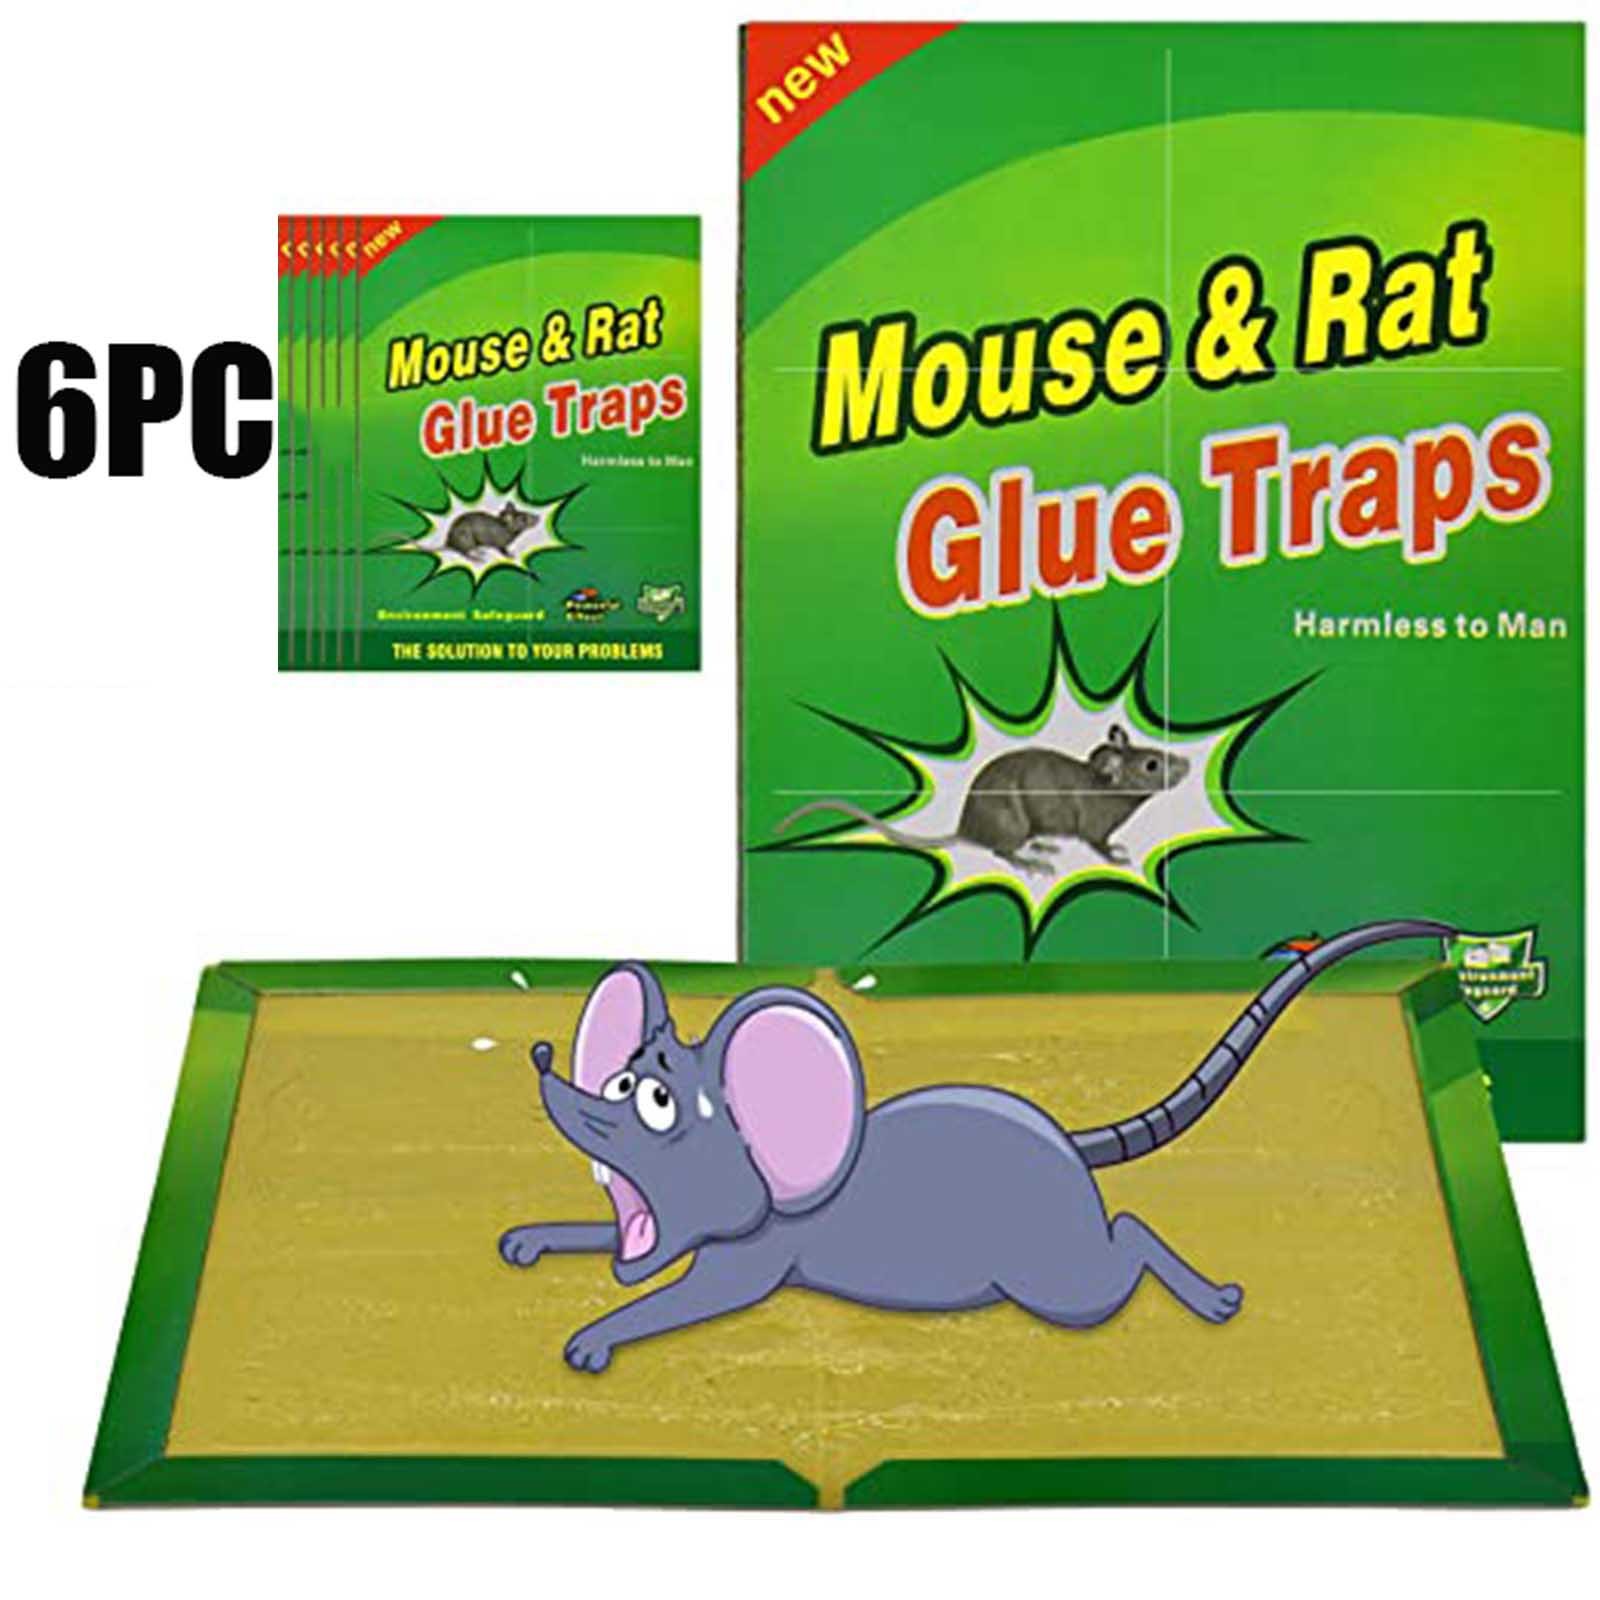 Egérlemez Ragadós Egerek Ragasztócsapdája Nagy Hatékonyságú Rágcsáló Patkány Kígyóhibák Elkapója Kártevőirtás Elutasítja A Nem Mérgező Környezetbarát